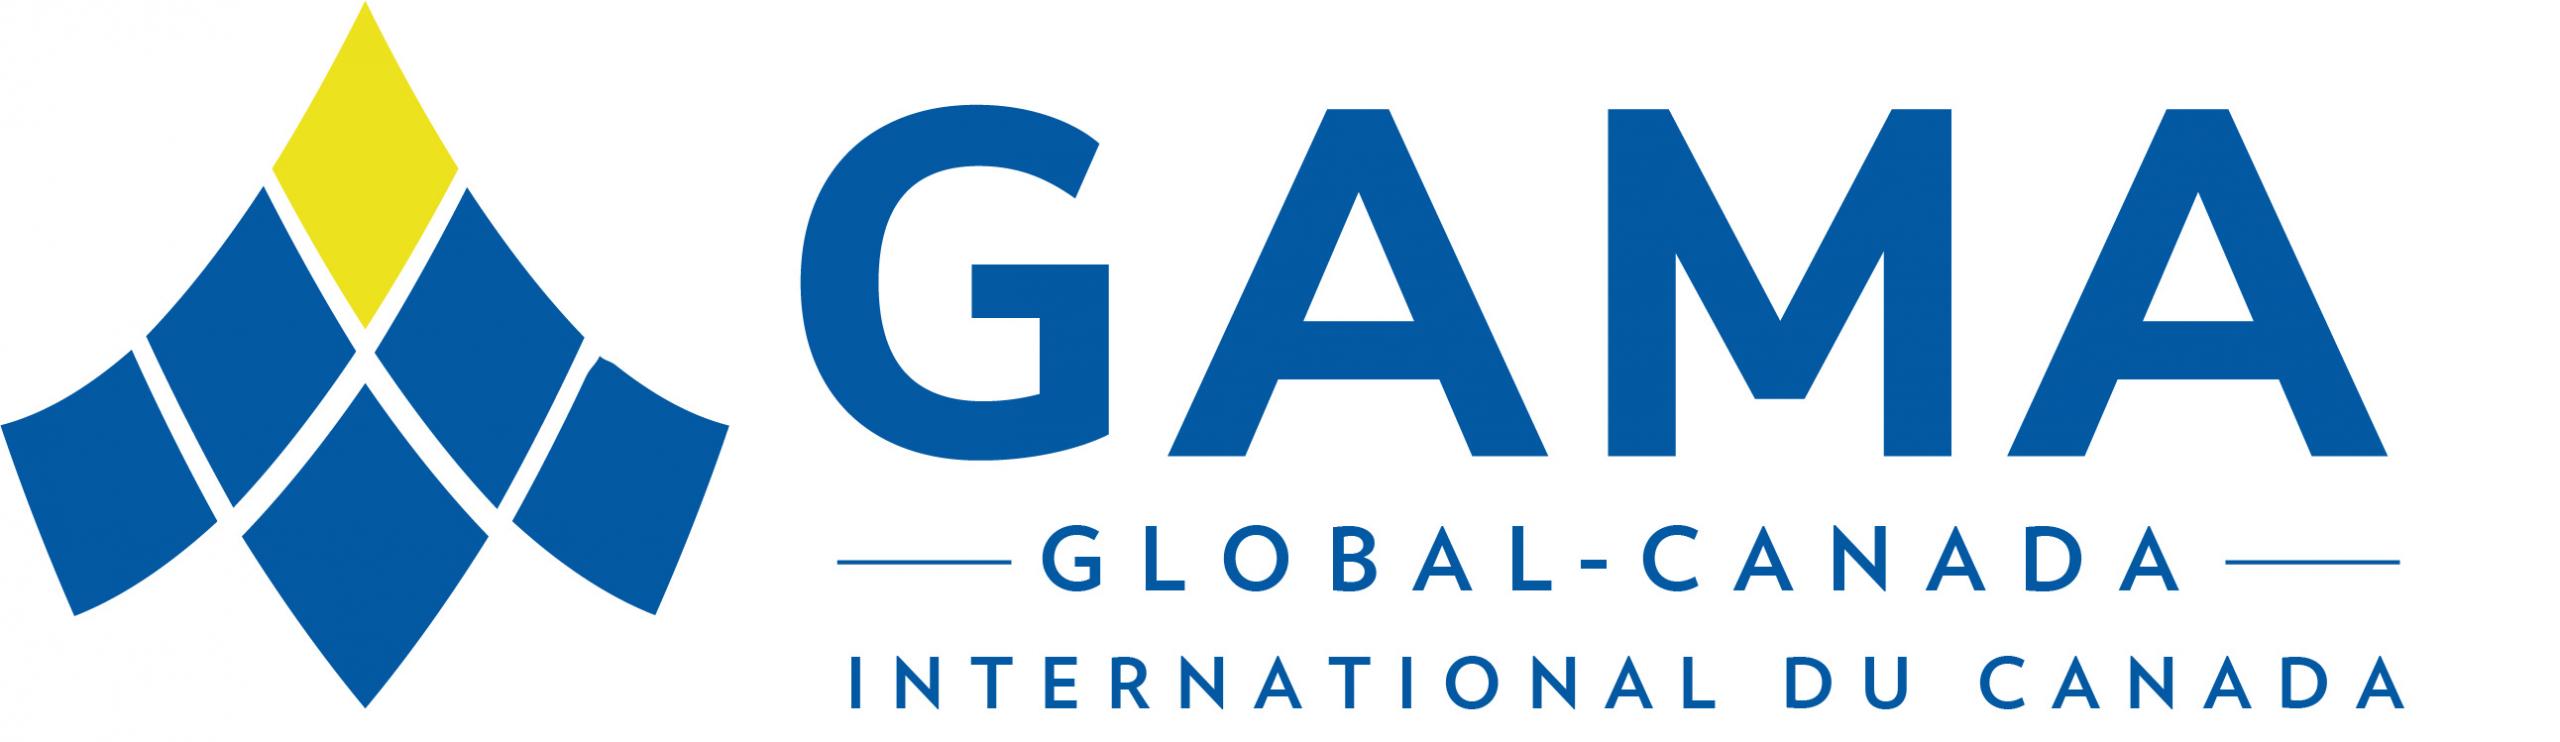 GAMA Global Canada